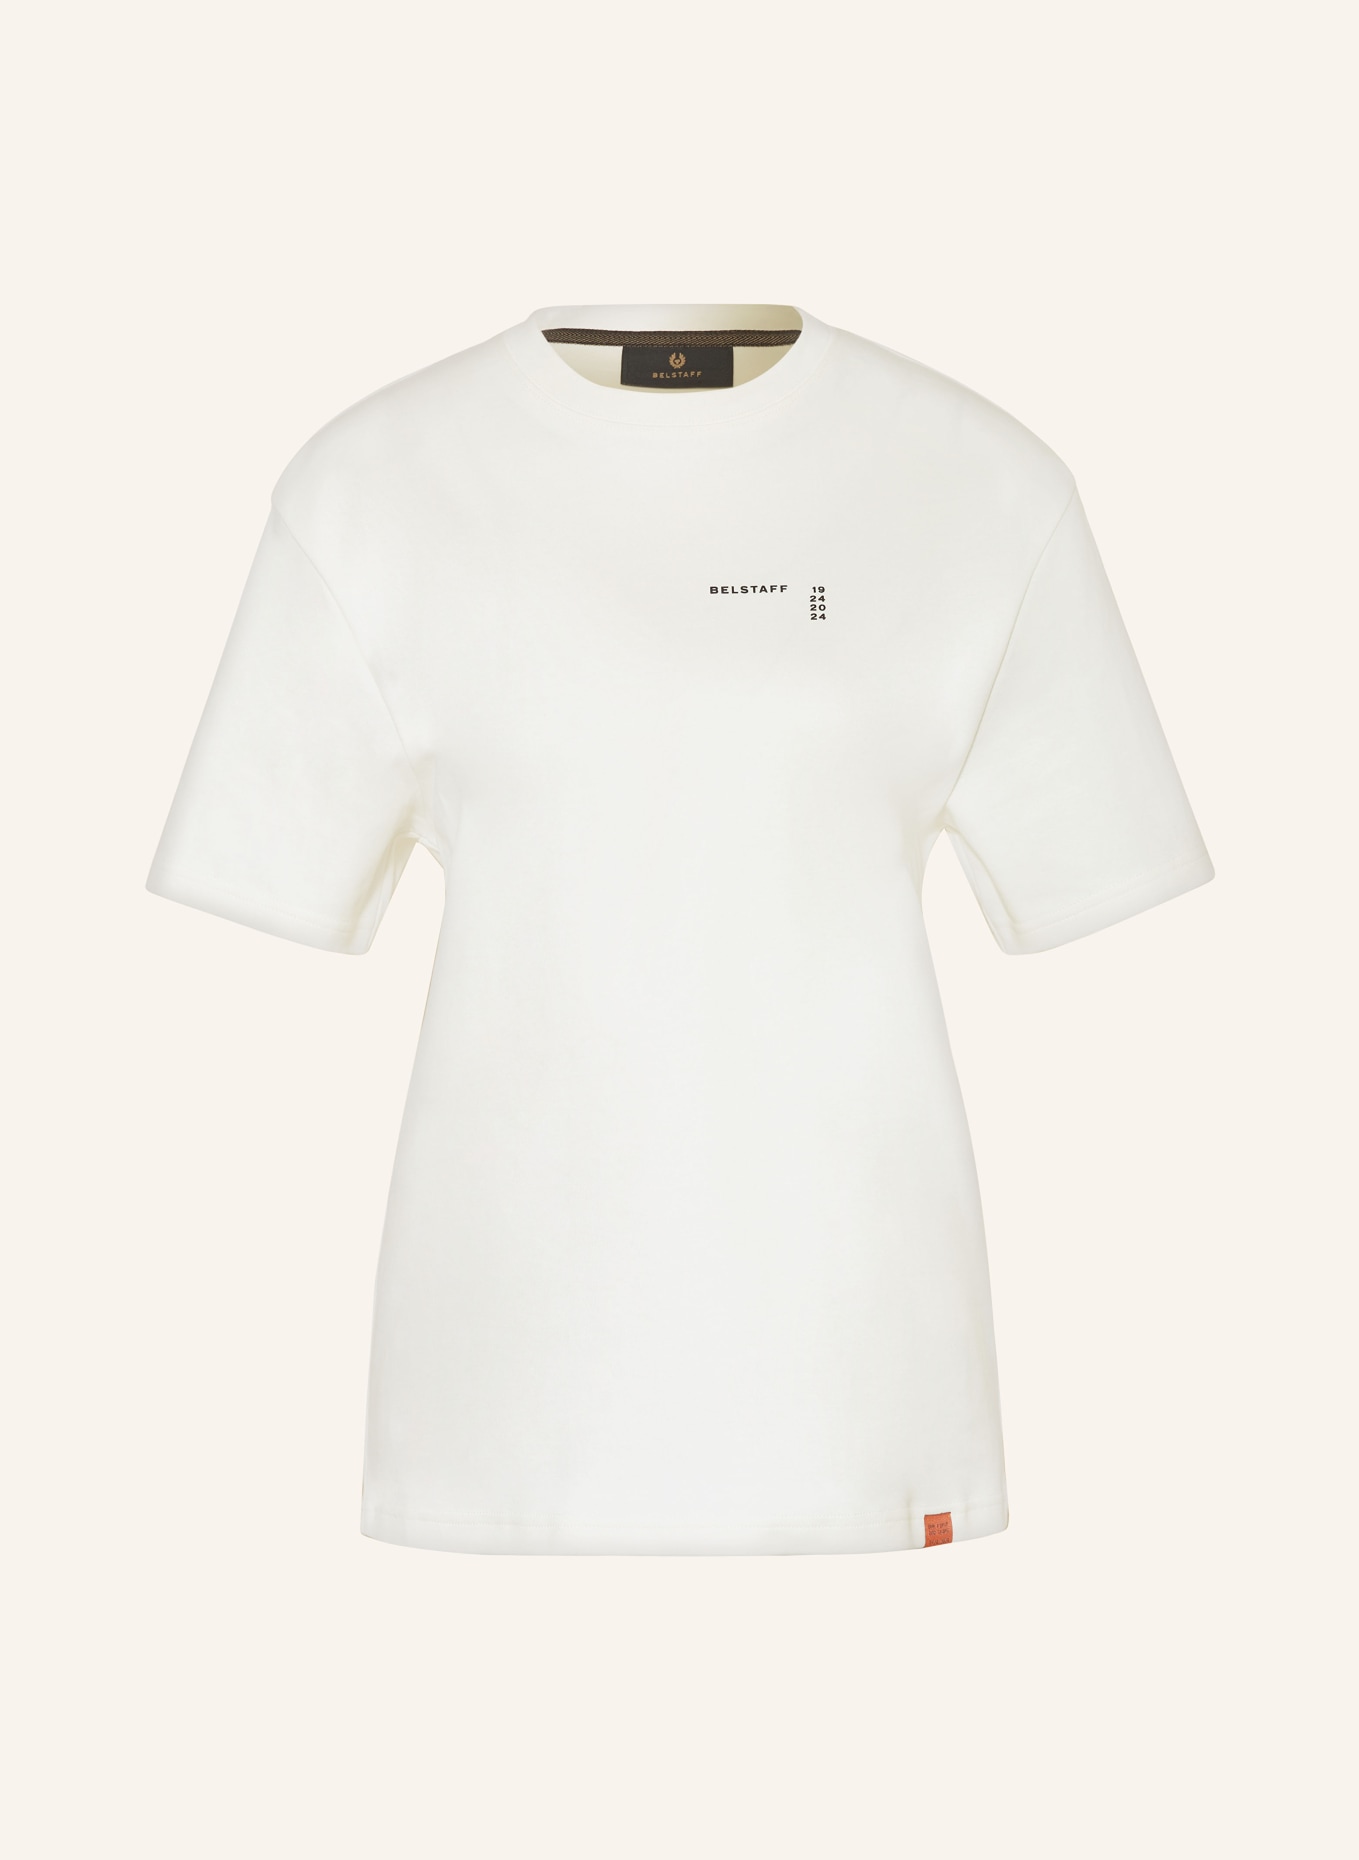 BELSTAFF T-Shirt CENTENARY, Farbe: HELLGELB (Bild 1)